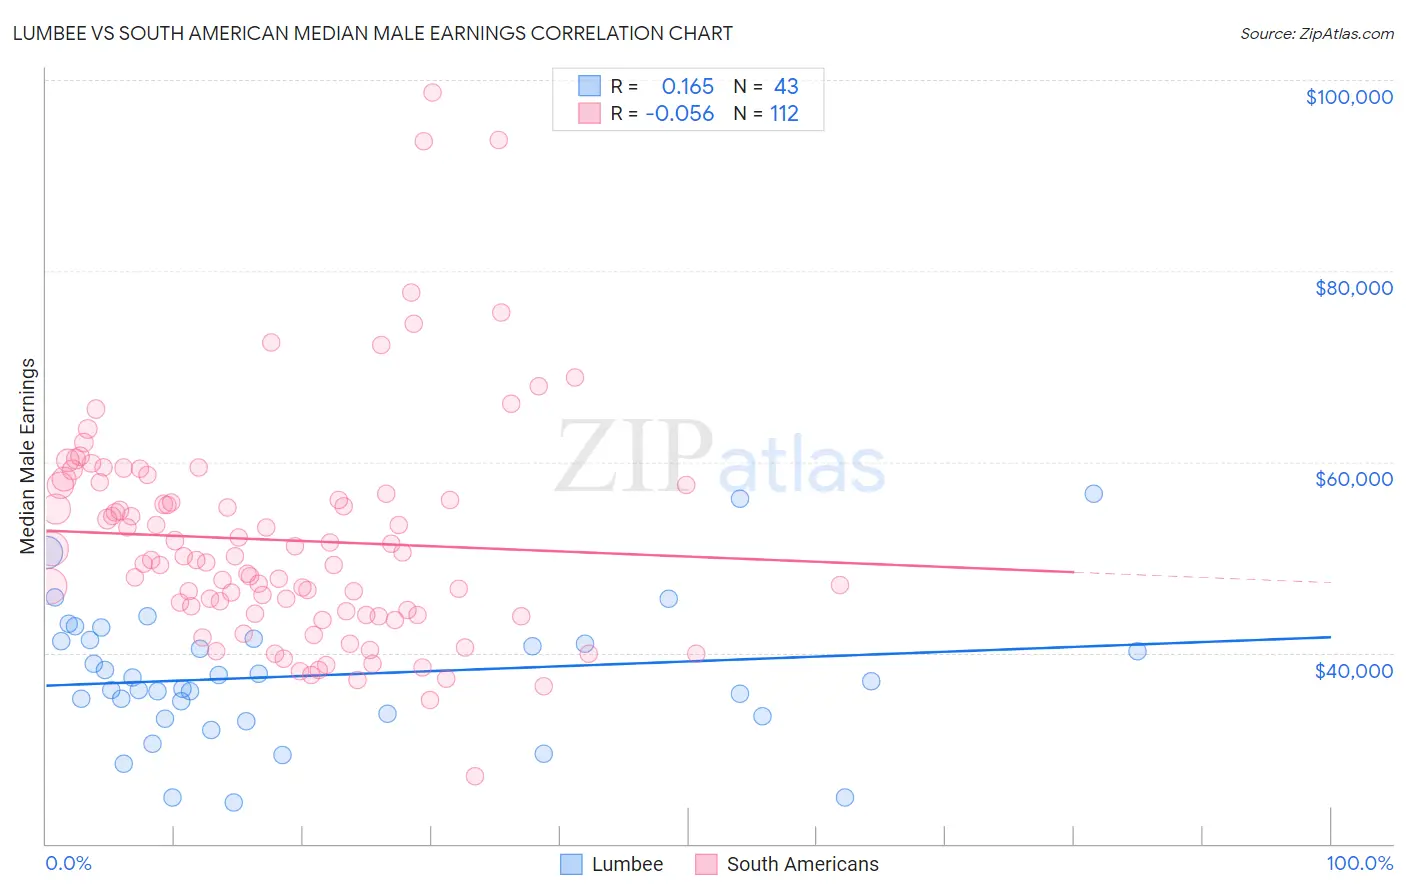 Lumbee vs South American Median Male Earnings